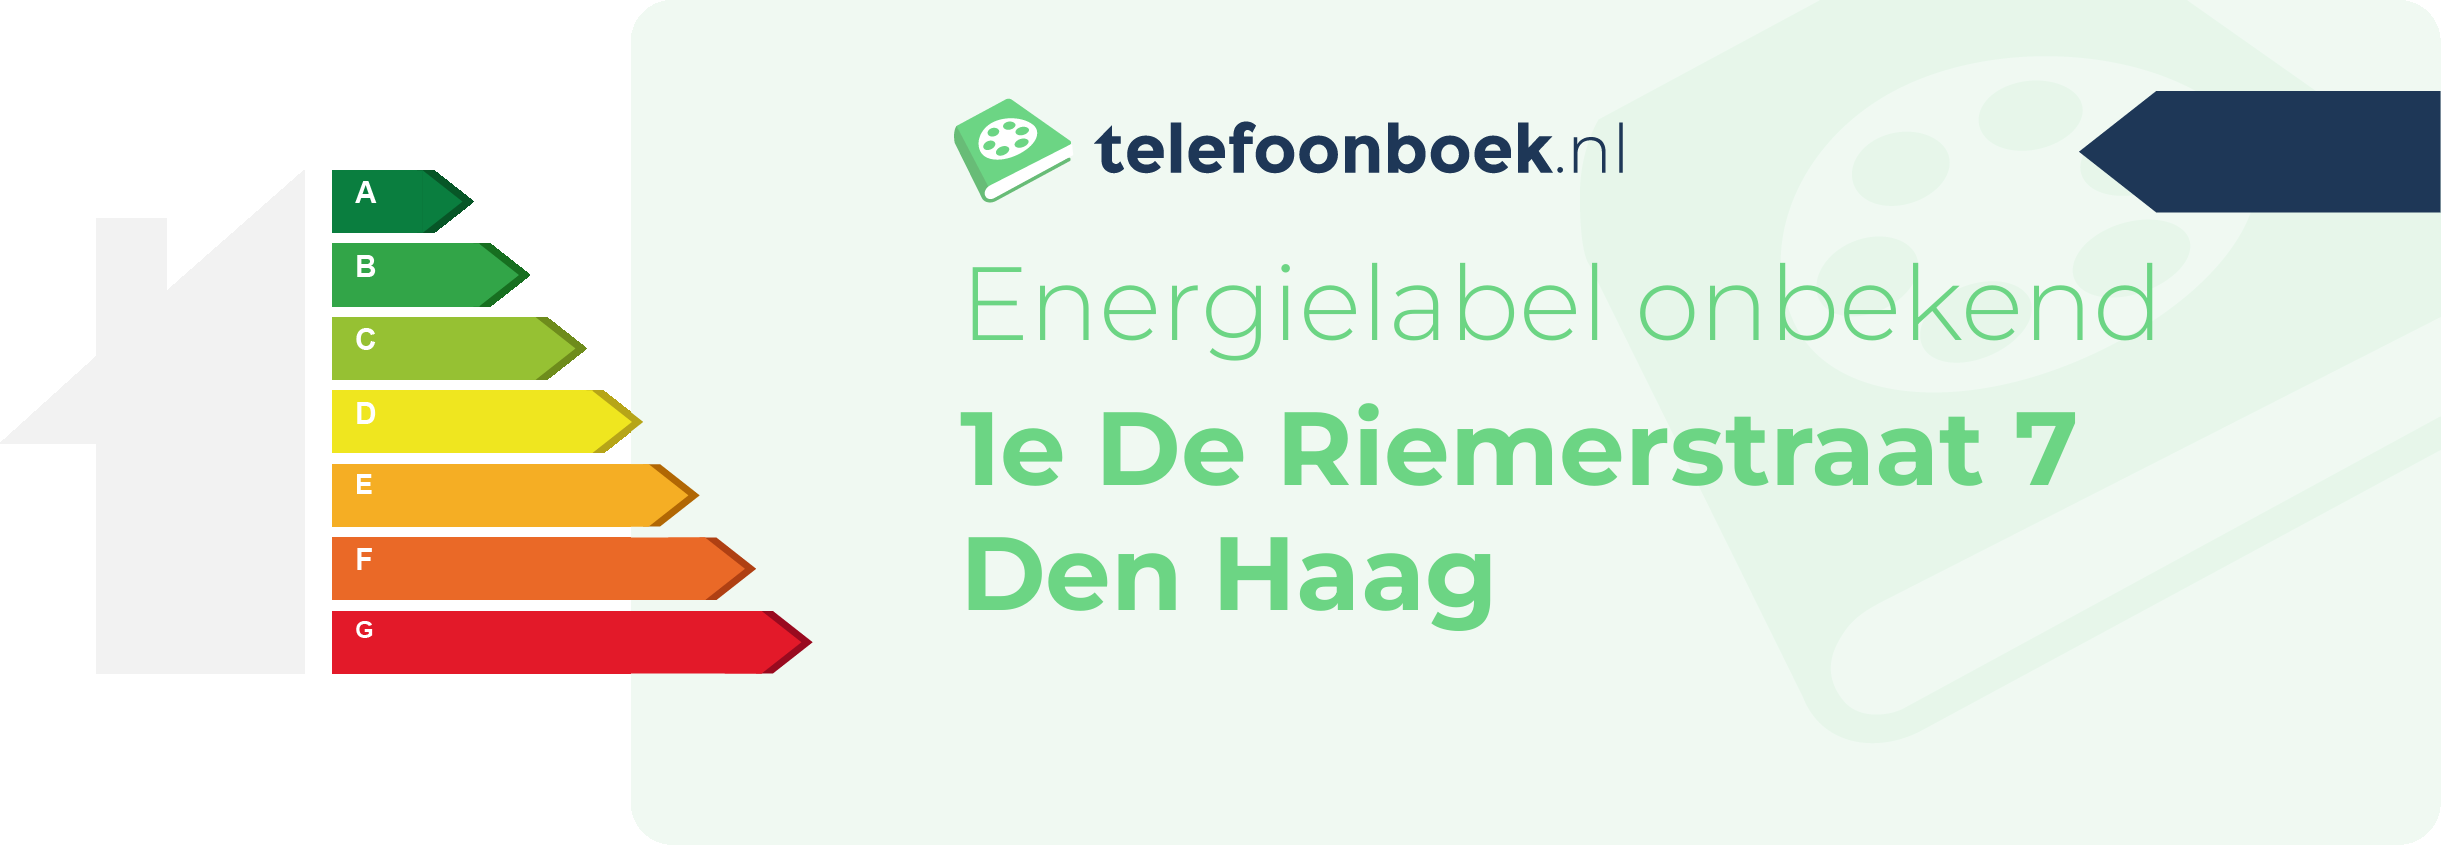 Energielabel 1e De Riemerstraat 7 Den Haag